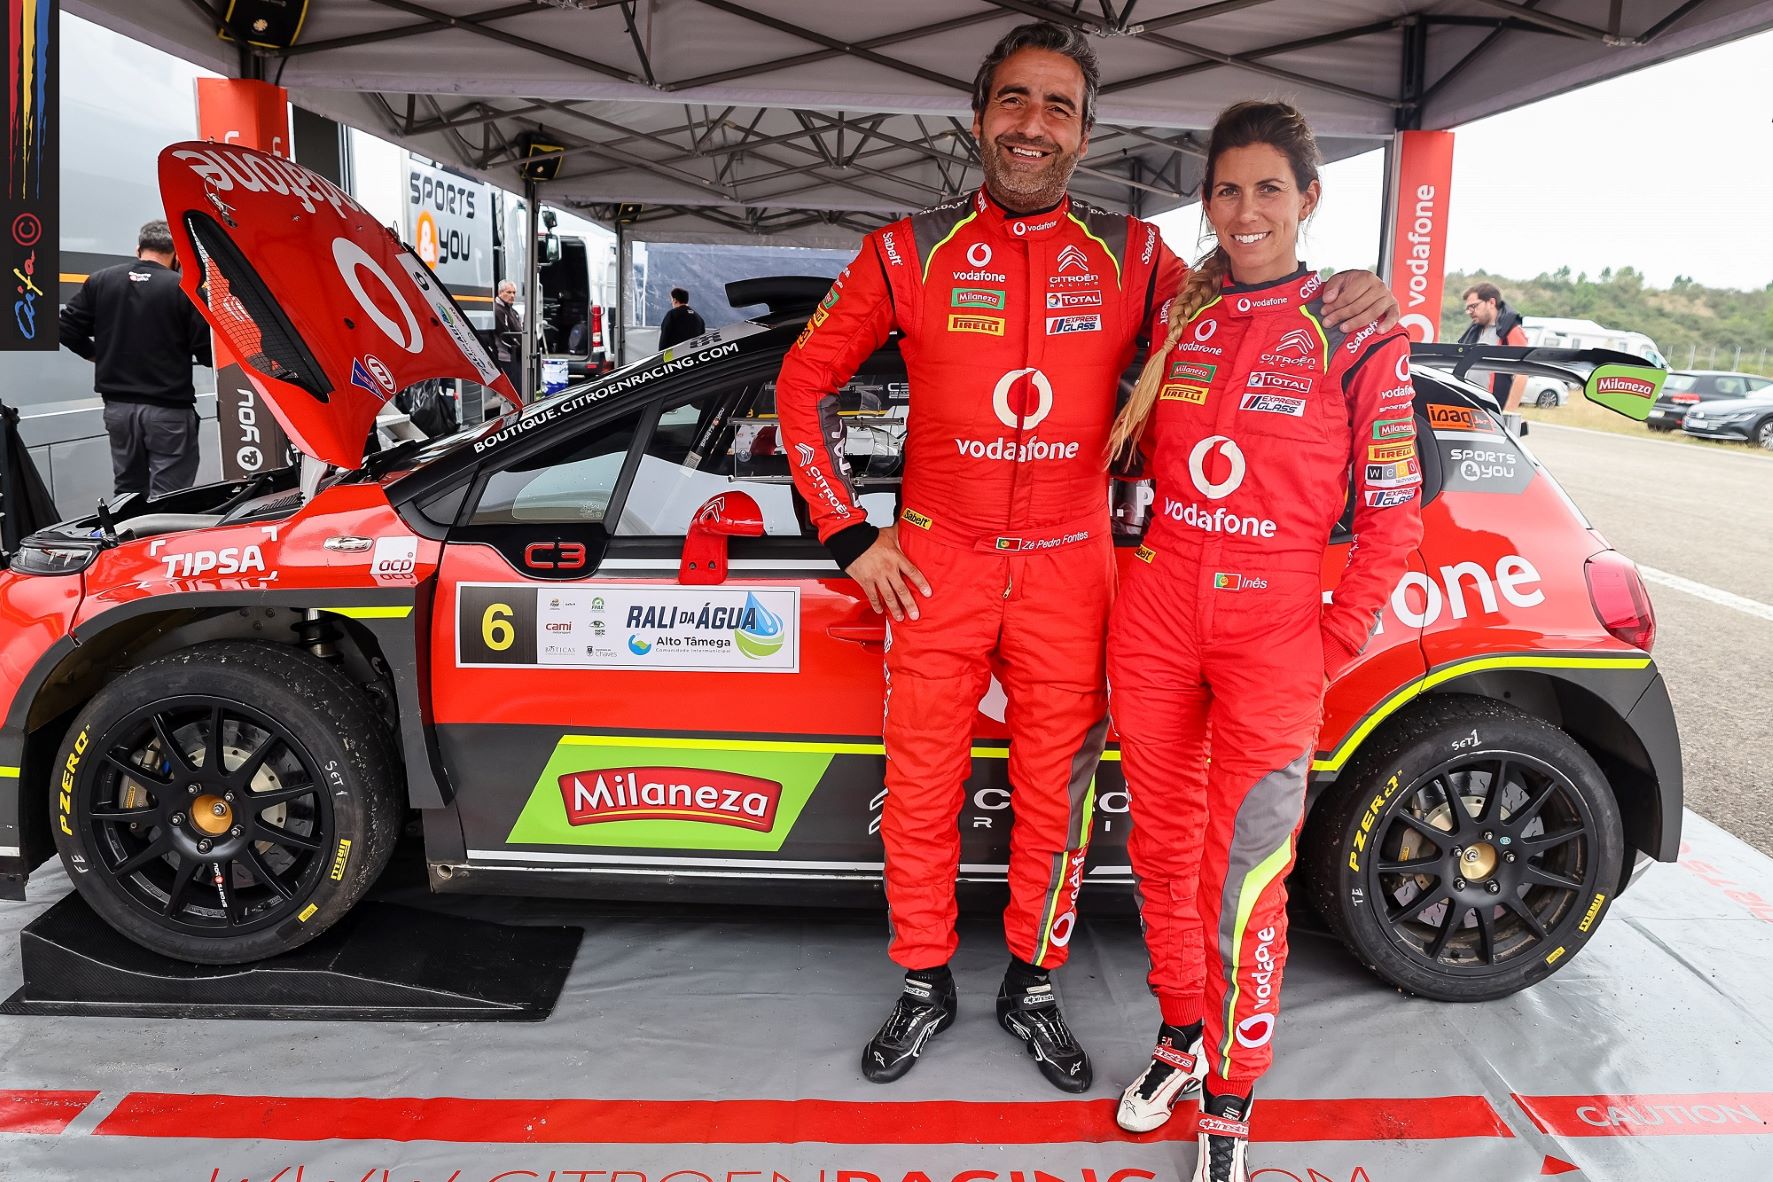 Citroën Vodafone Team aposta na conquista de nova vitória no Rallye Vidreiro 14